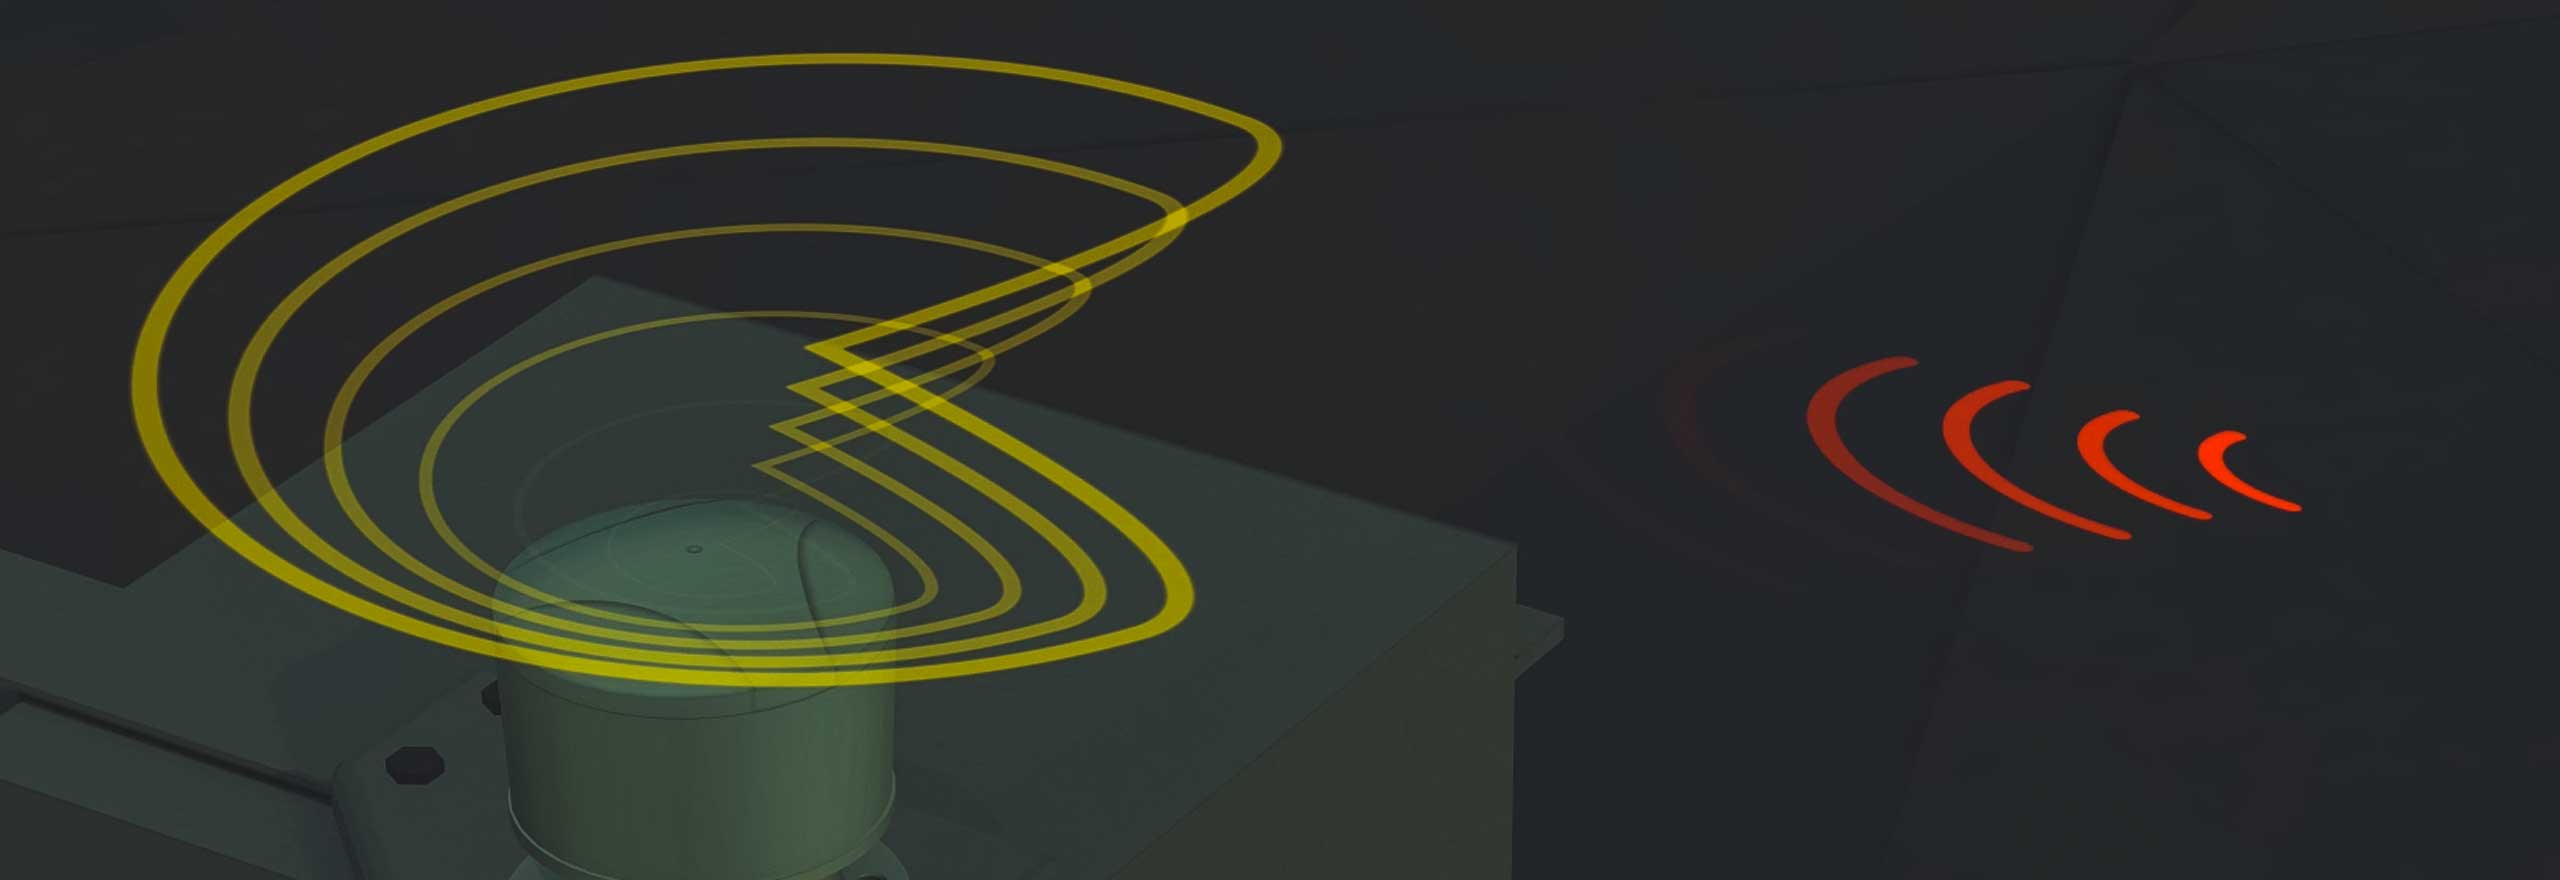 Imagem animada mostrando como a tecnologia de GPS anti-interferência identifica e reduz as interferências e obstruções.